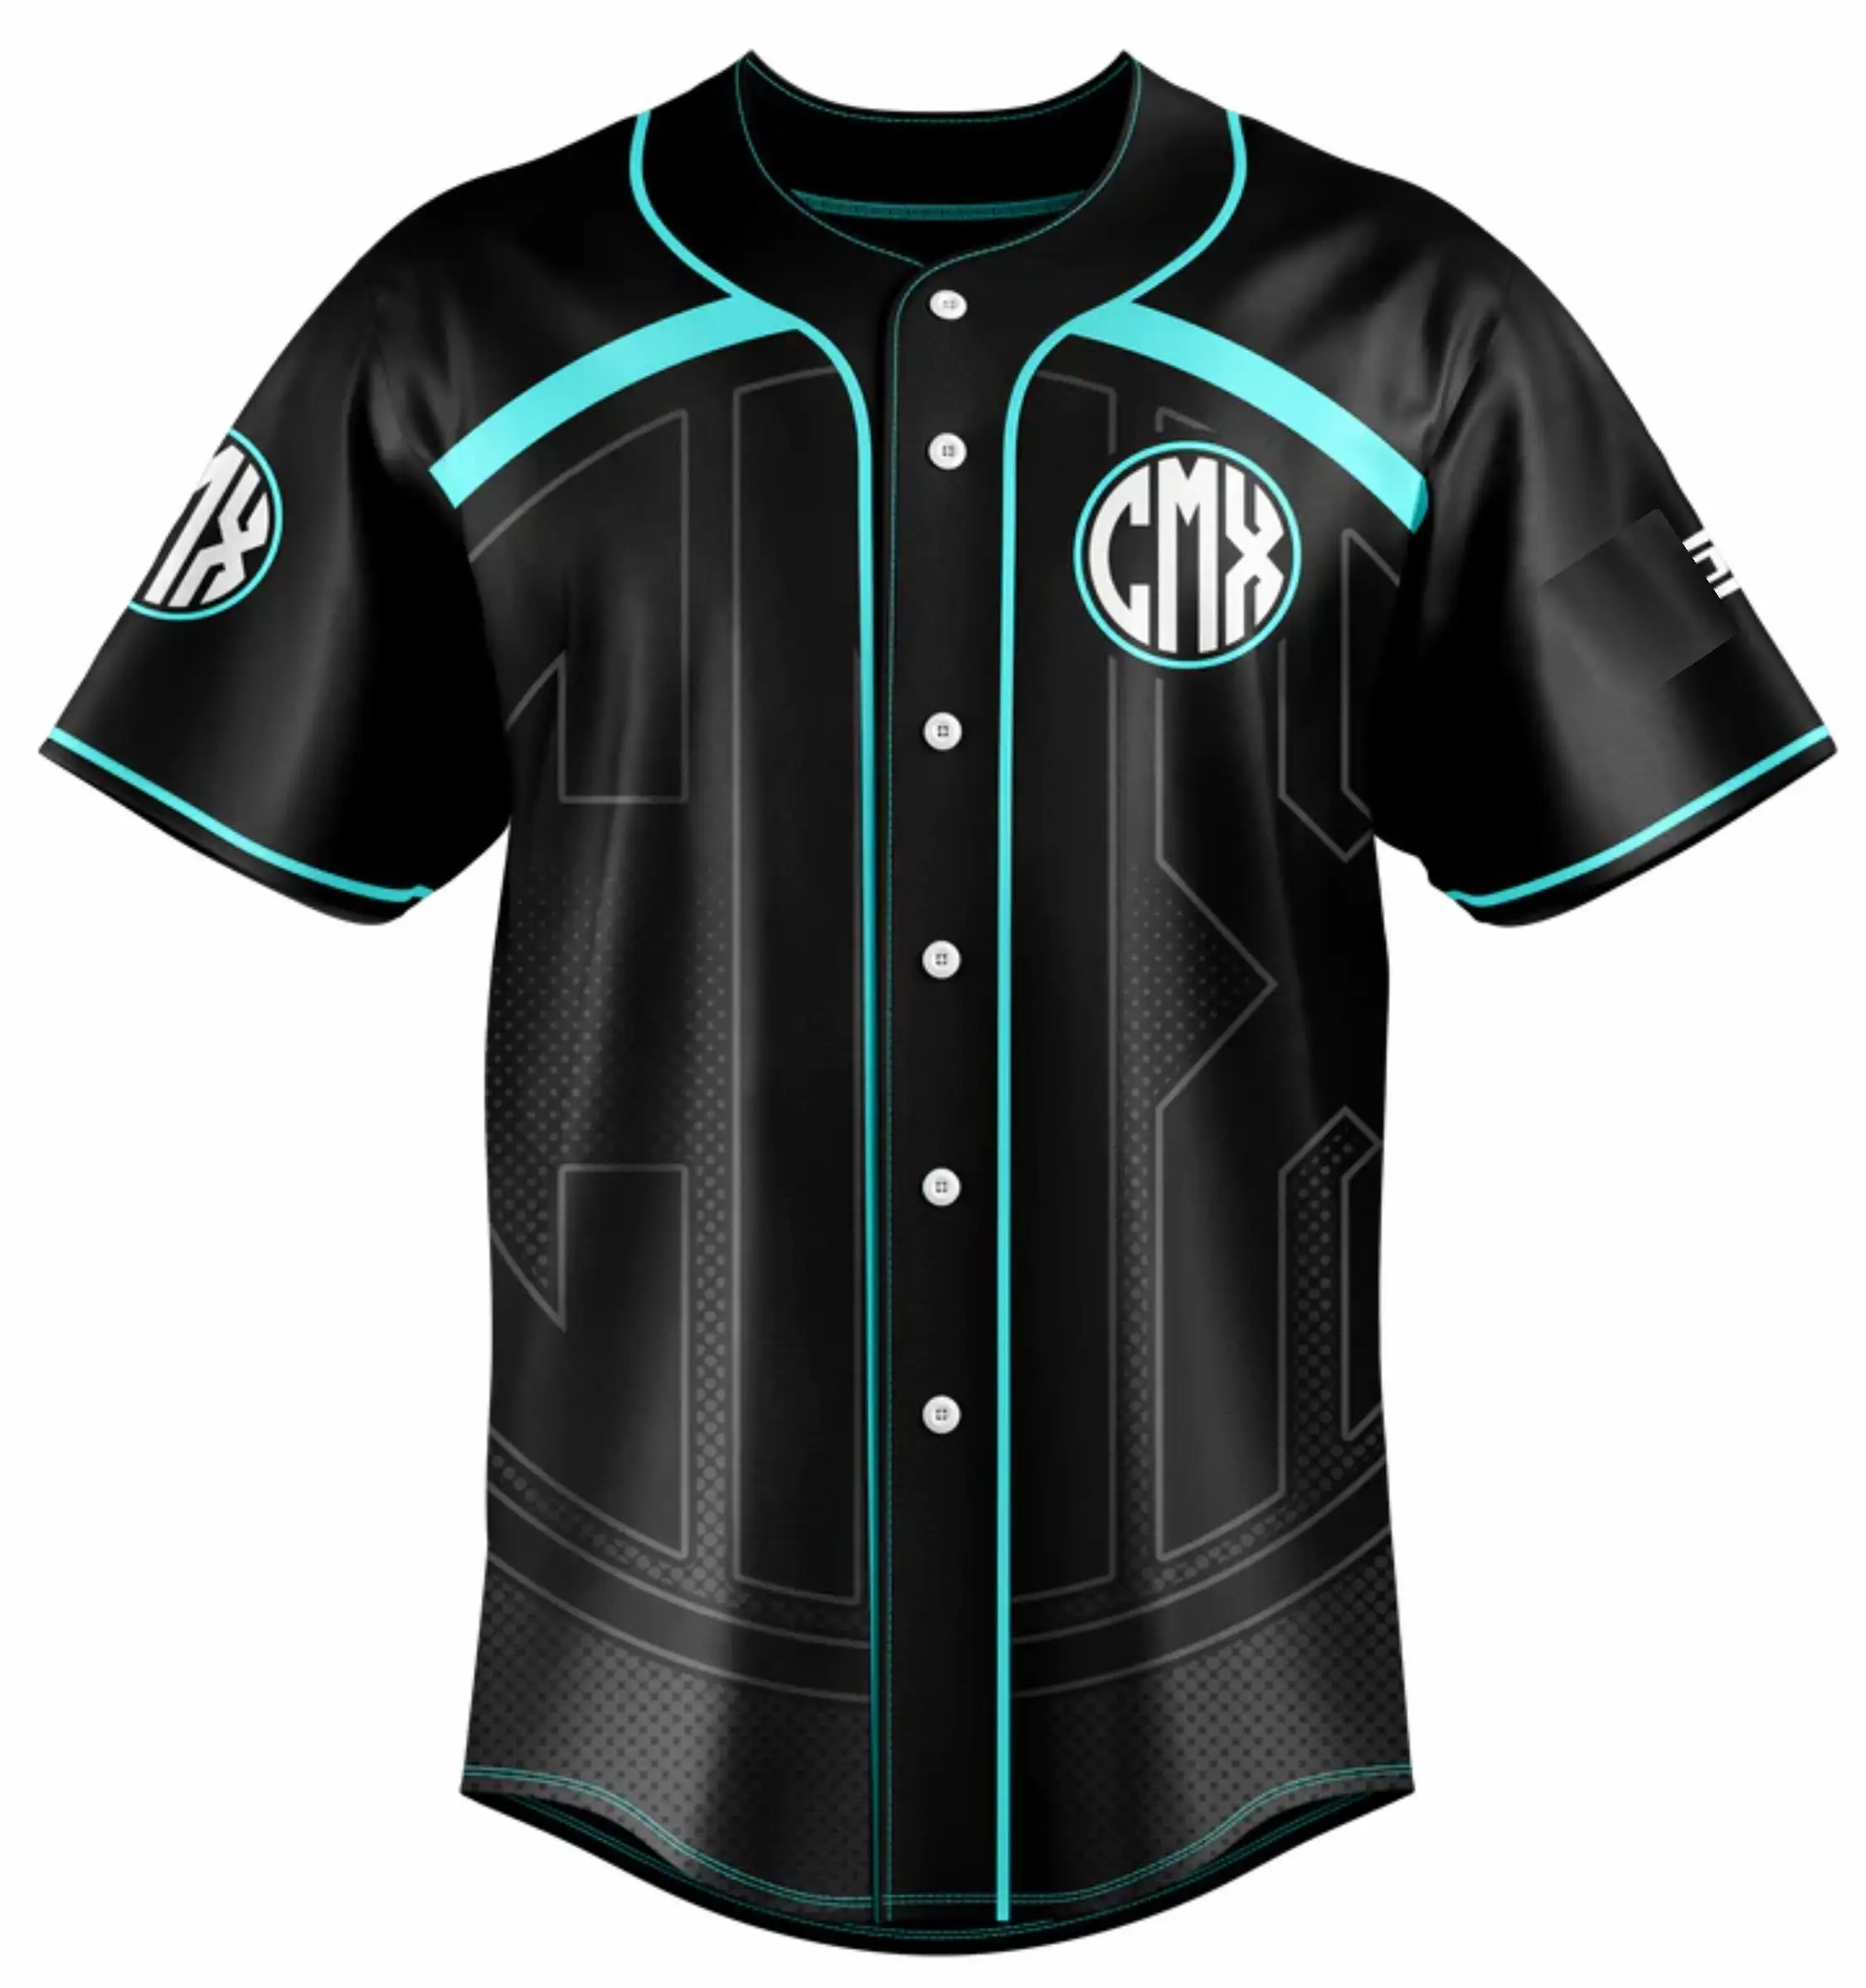 Maillot de Baseball personnalisé cousu chemises de Baseball personnalisées uniforme de sport pour hommes femmes garçon